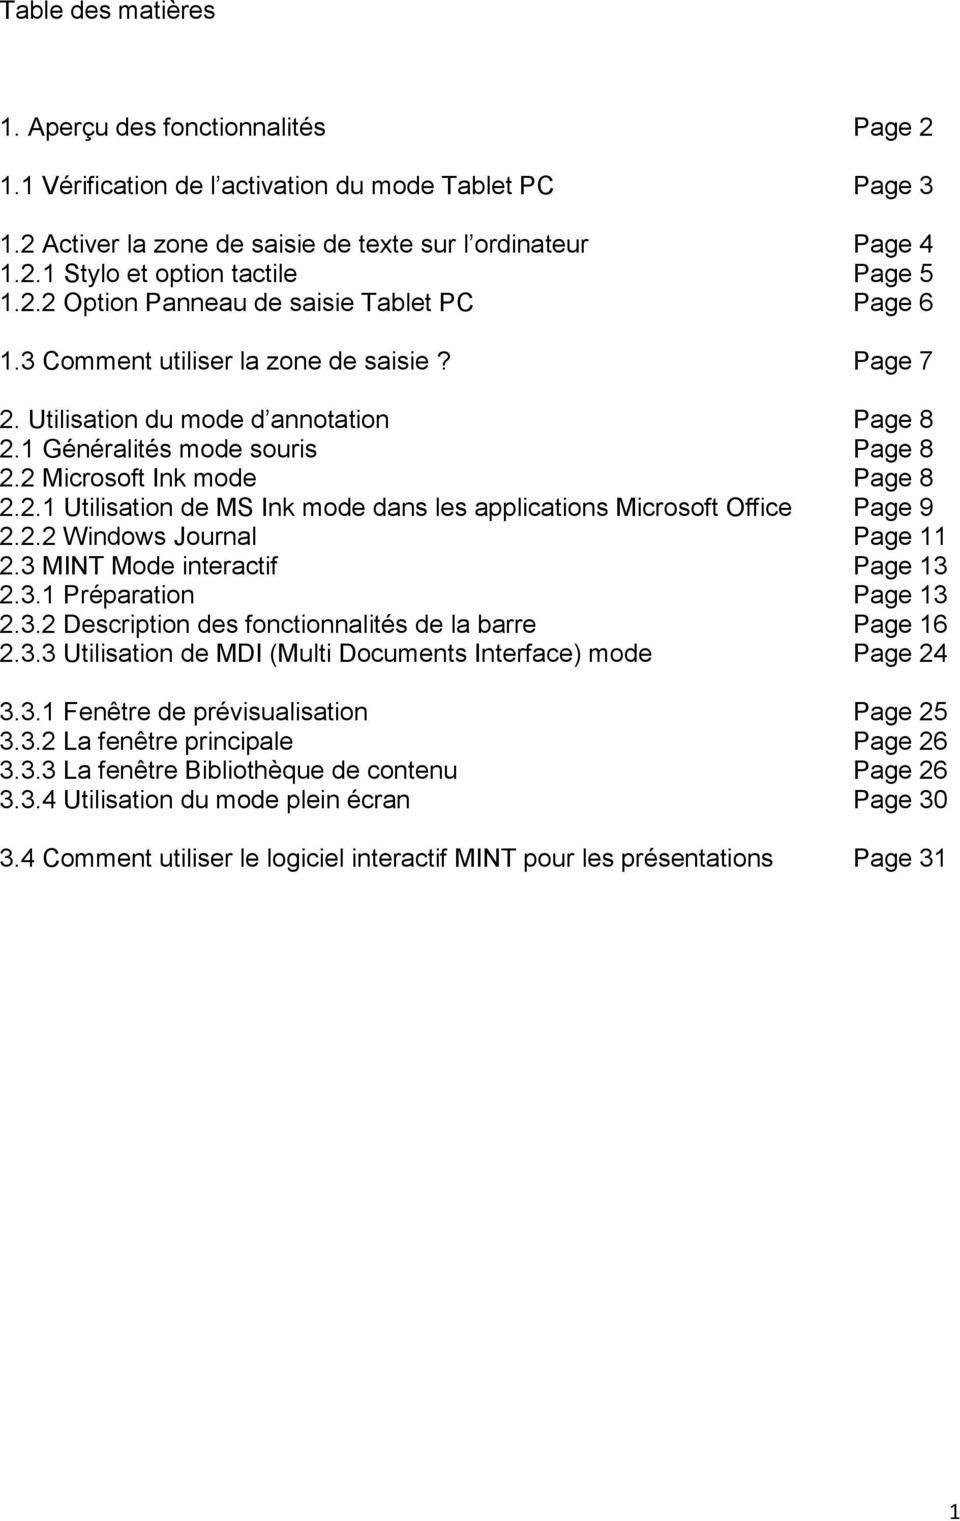 2 Microsoft Ink mode Page 8 2.2.1 Utilisation de MS Ink mode dans les applications Microsoft Office Page 9 2.2.2 Windows Journal Page 11 2.3 MINT Mode interactif Page 13 2.3.1 Préparation Page 13 2.3.2 Description des fonctionnalités de la barre Page 16 2.